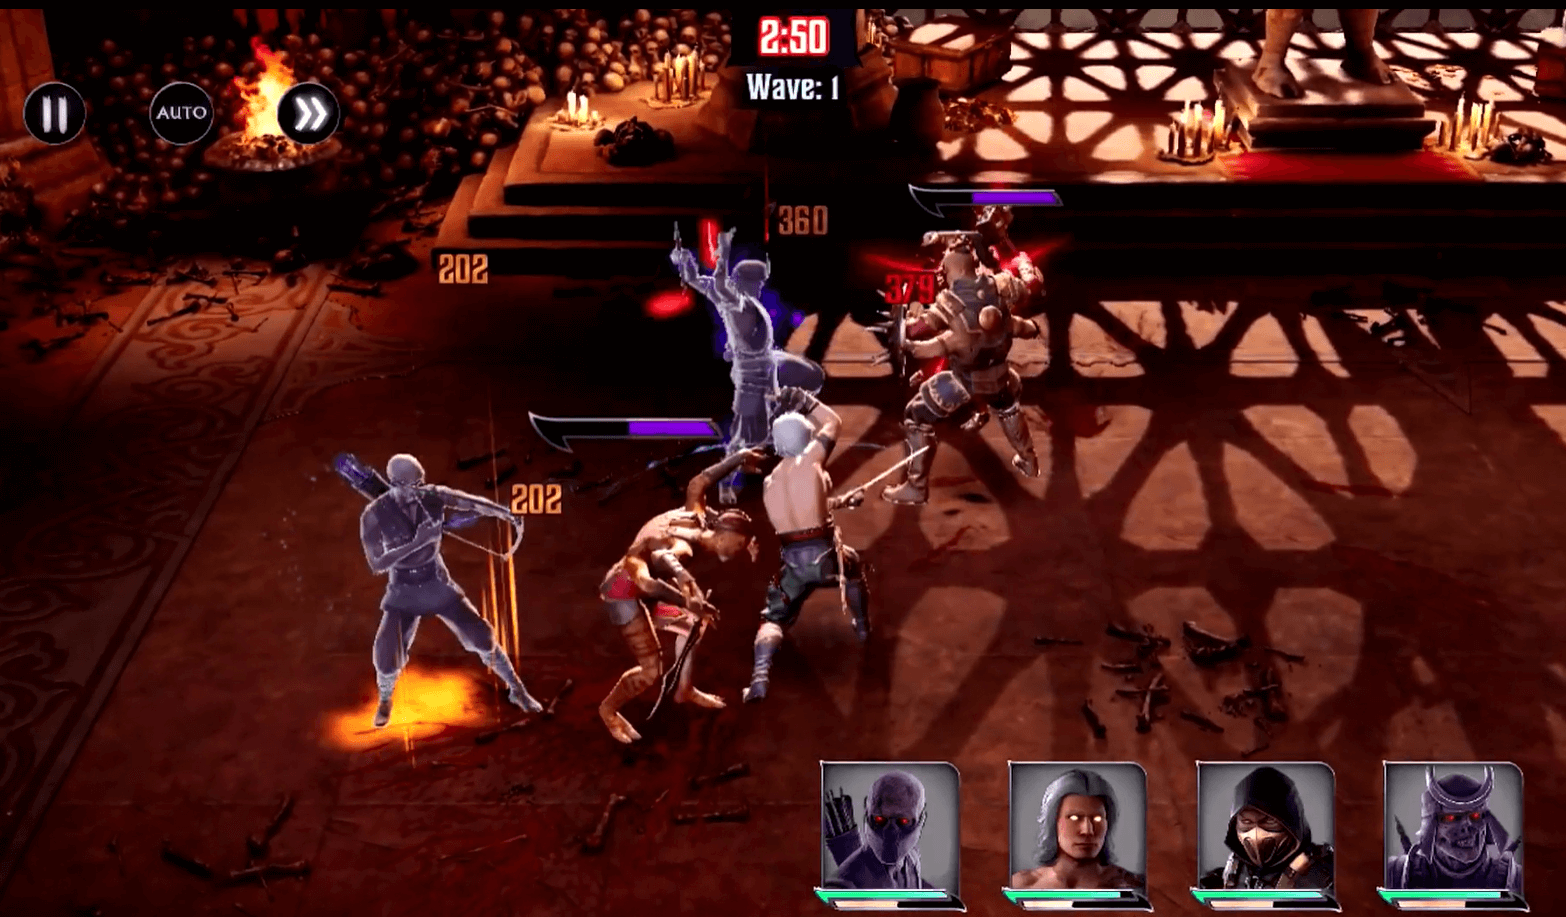 Mortal Kombat: Onslaught - Gameplay 